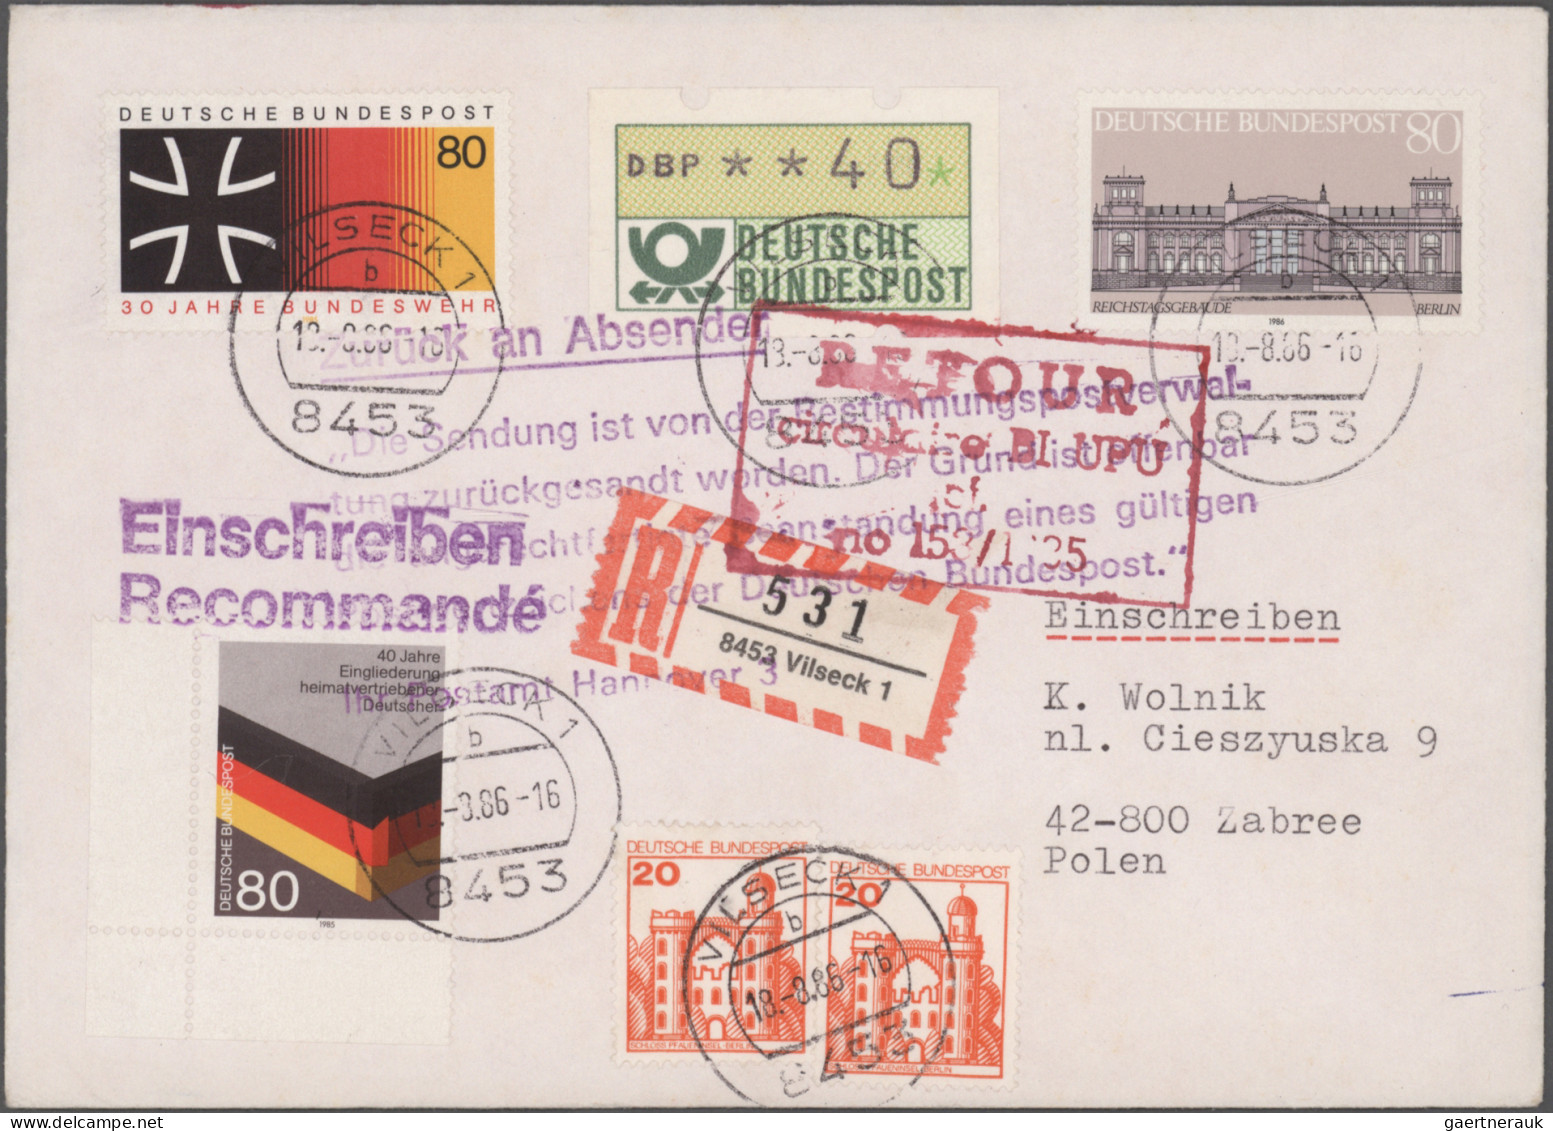 Deutschland nach 1945: 1945/1990 (ca.), umfangreicher Bestand Marken und Belege,